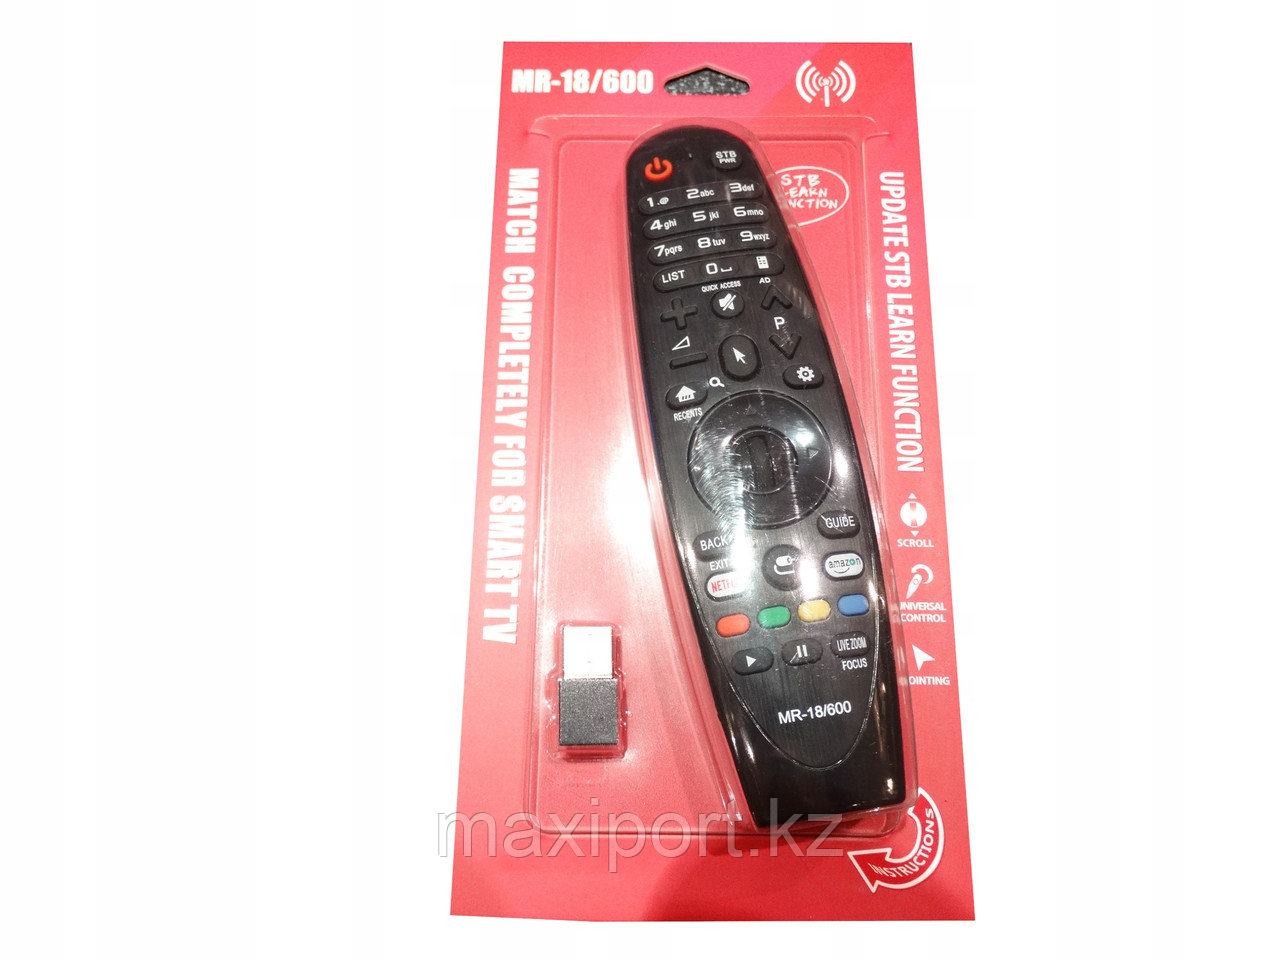 Пульт дистанционного управления MR18/600 Magic Remote для Smart телевизоров LG (Дубликат)!!!